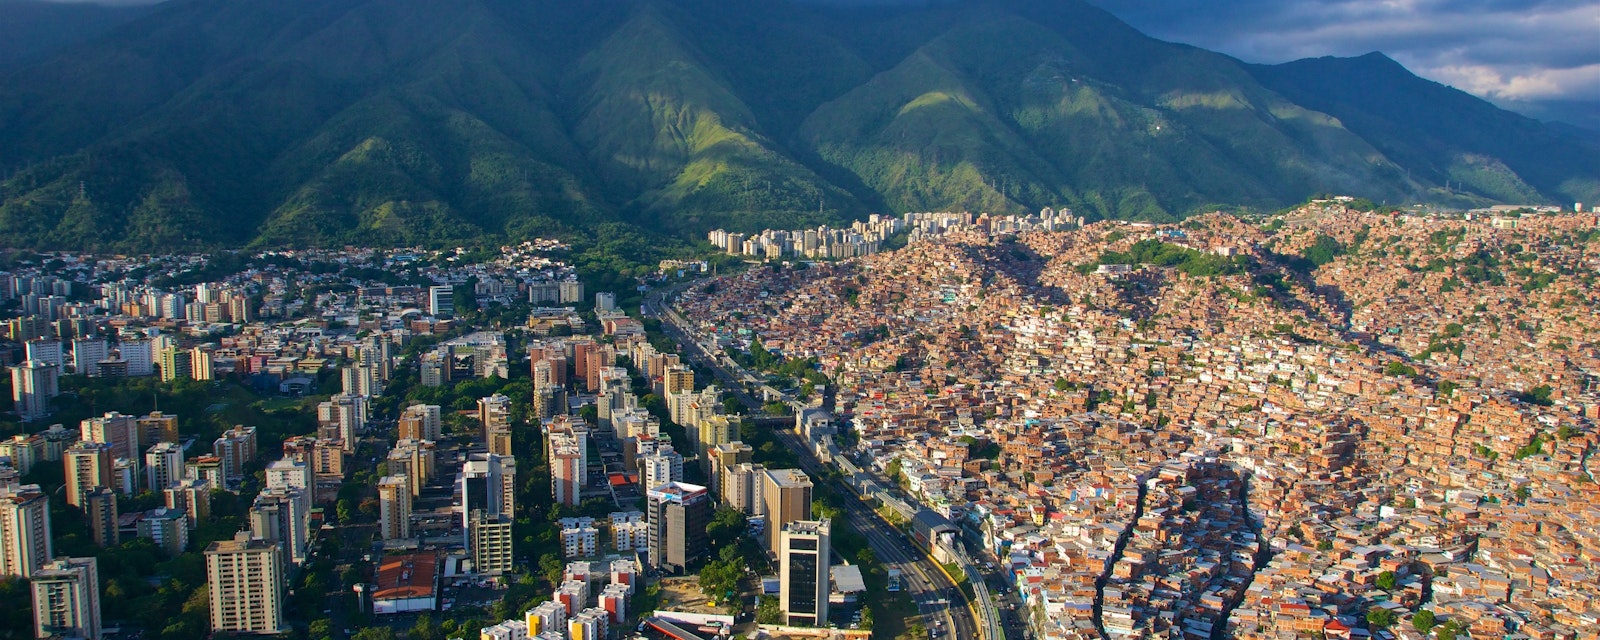 Caracas,Venezuela